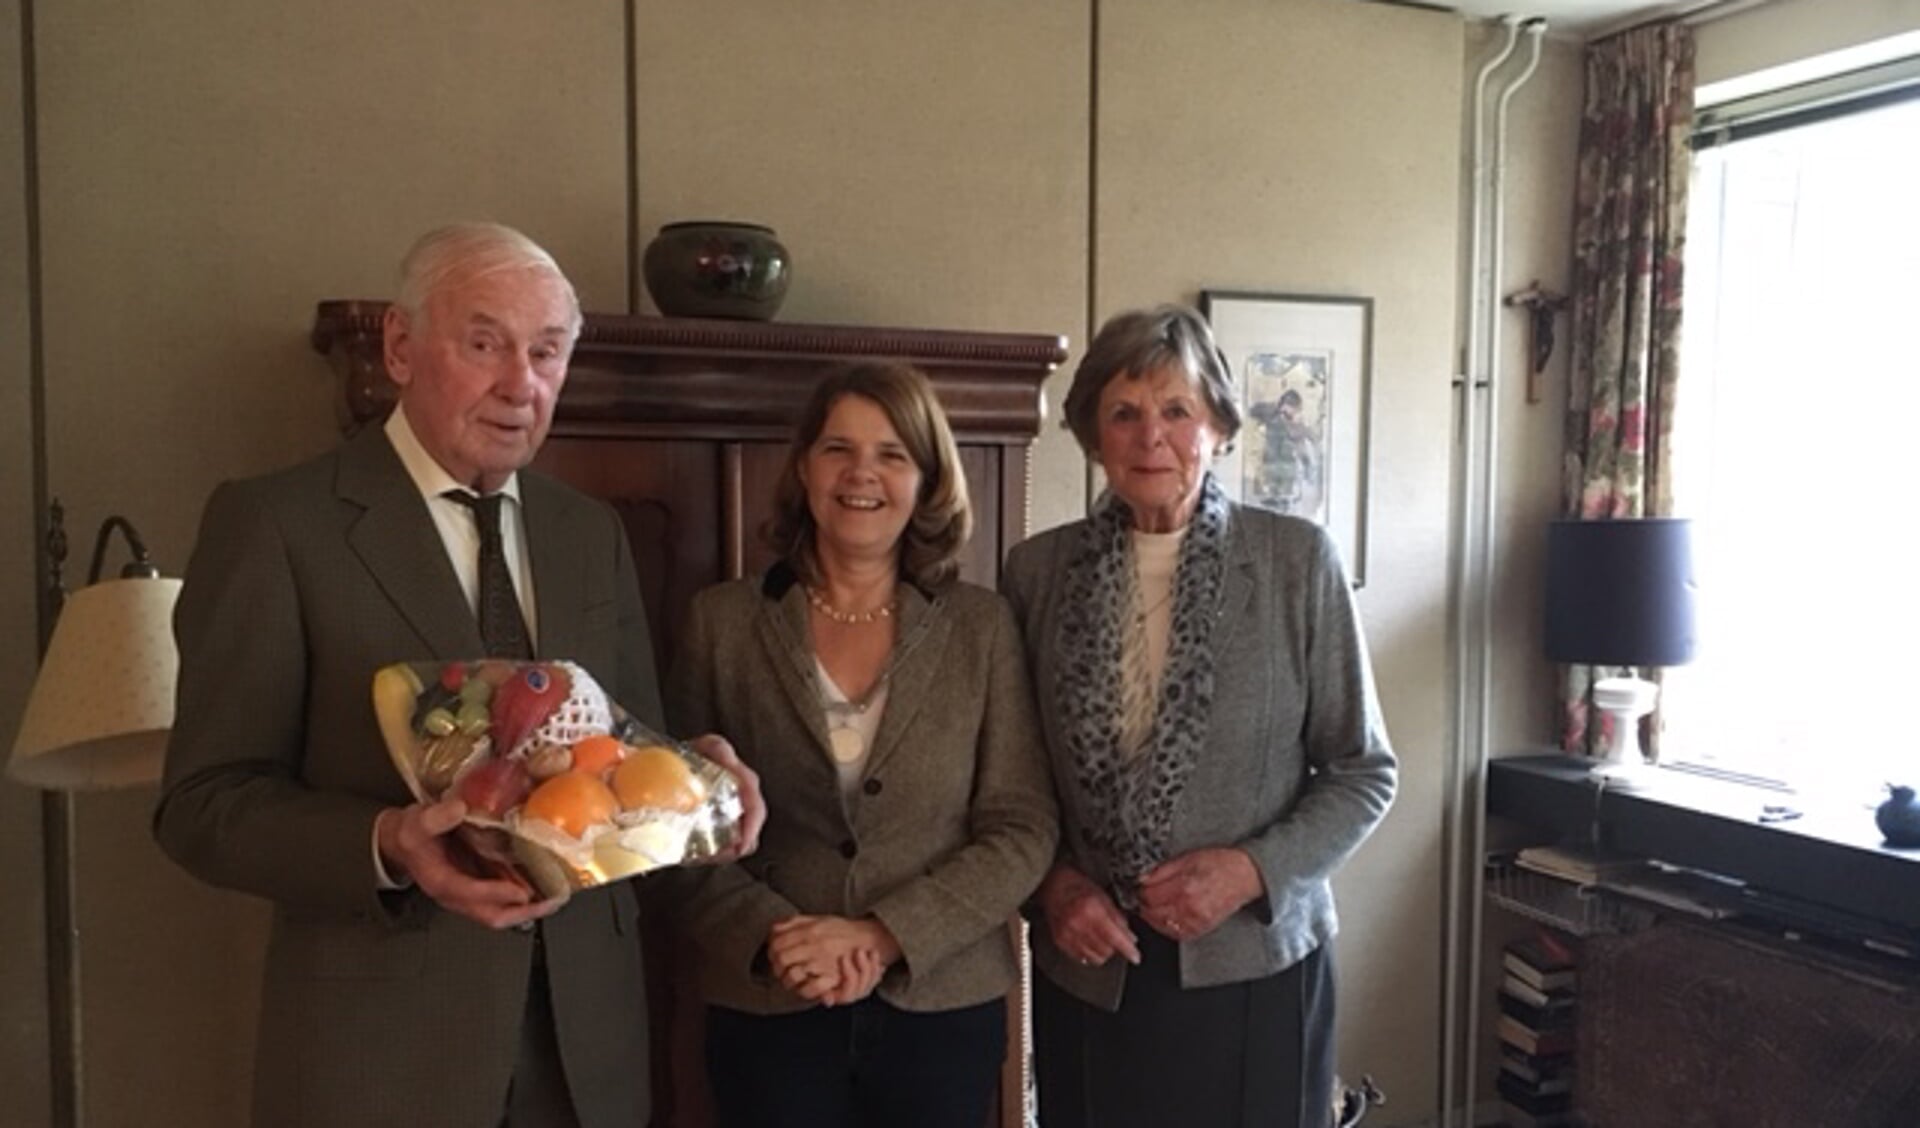 Op 26 november waren mevrouw en de heer Adriaanse 60 jaar getrouwd. Burgemeester Van Bijsterveldt kwam langs met de felicitaties.